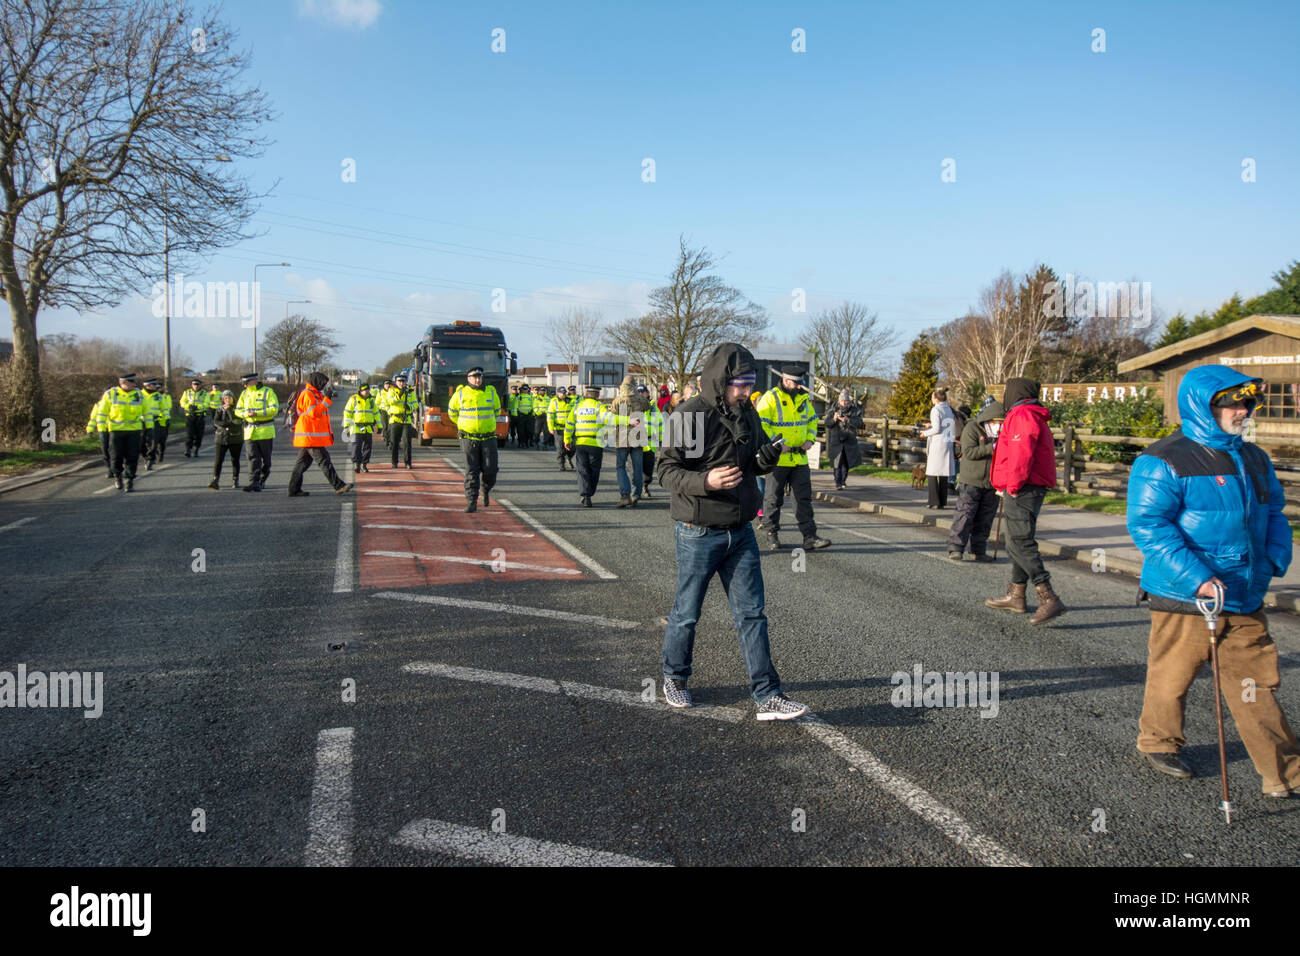 Blackpool, Royaume-Uni. 11 janvier 2017. Un petit groupe de manifestants détenus jusqu'antifracking une livraison de matériel être livrés à Cuadrilla gaz de schiste controversée de la fracturation hydraulique sur site Preston New Road, près de Blackpool Plumpton peu lorsqu'ils ont bloqué la voie en direction est à marche lente le camion au site d'environ un mille plus loin sur la route. Les manifestants sont arrivés vers 09:00 heures et est demeuré à l'avant du camion avec la police locale dans l'assistance. Crédit : Dave Ellison/Alamy Live News Banque D'Images